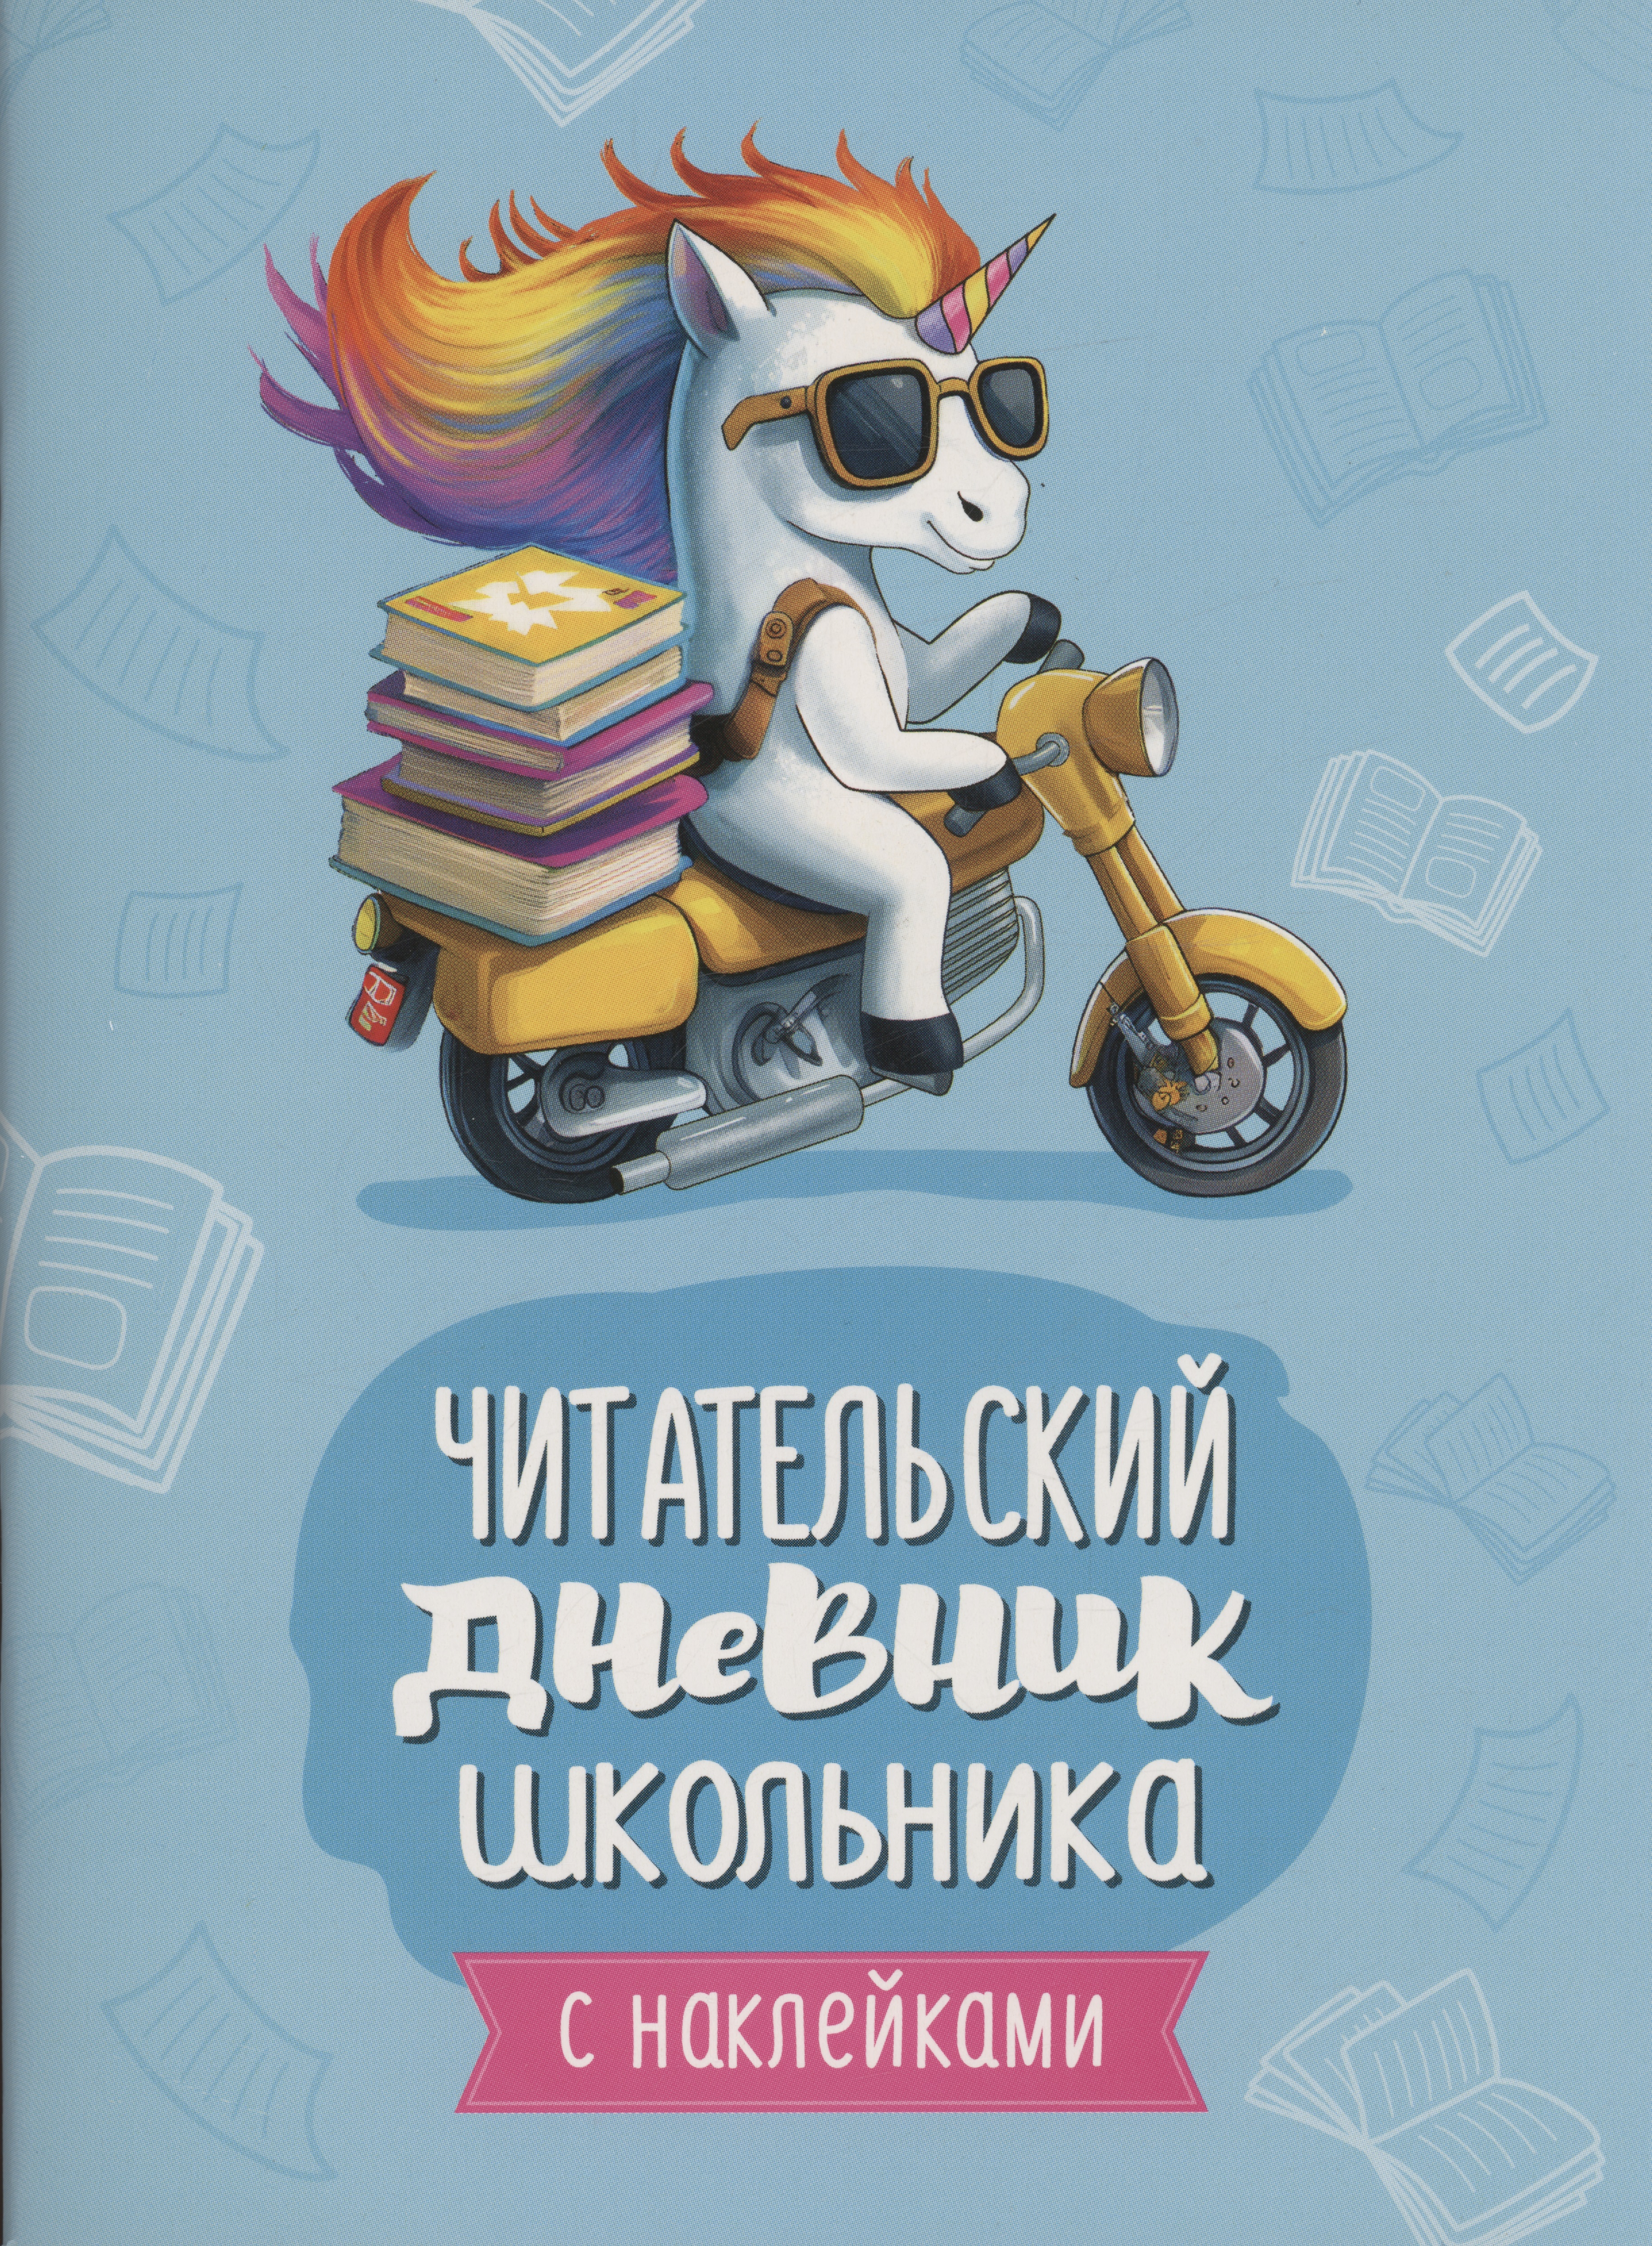 Читательский дневник школьника (с наклейками) маханова е а читательский дневник школьника